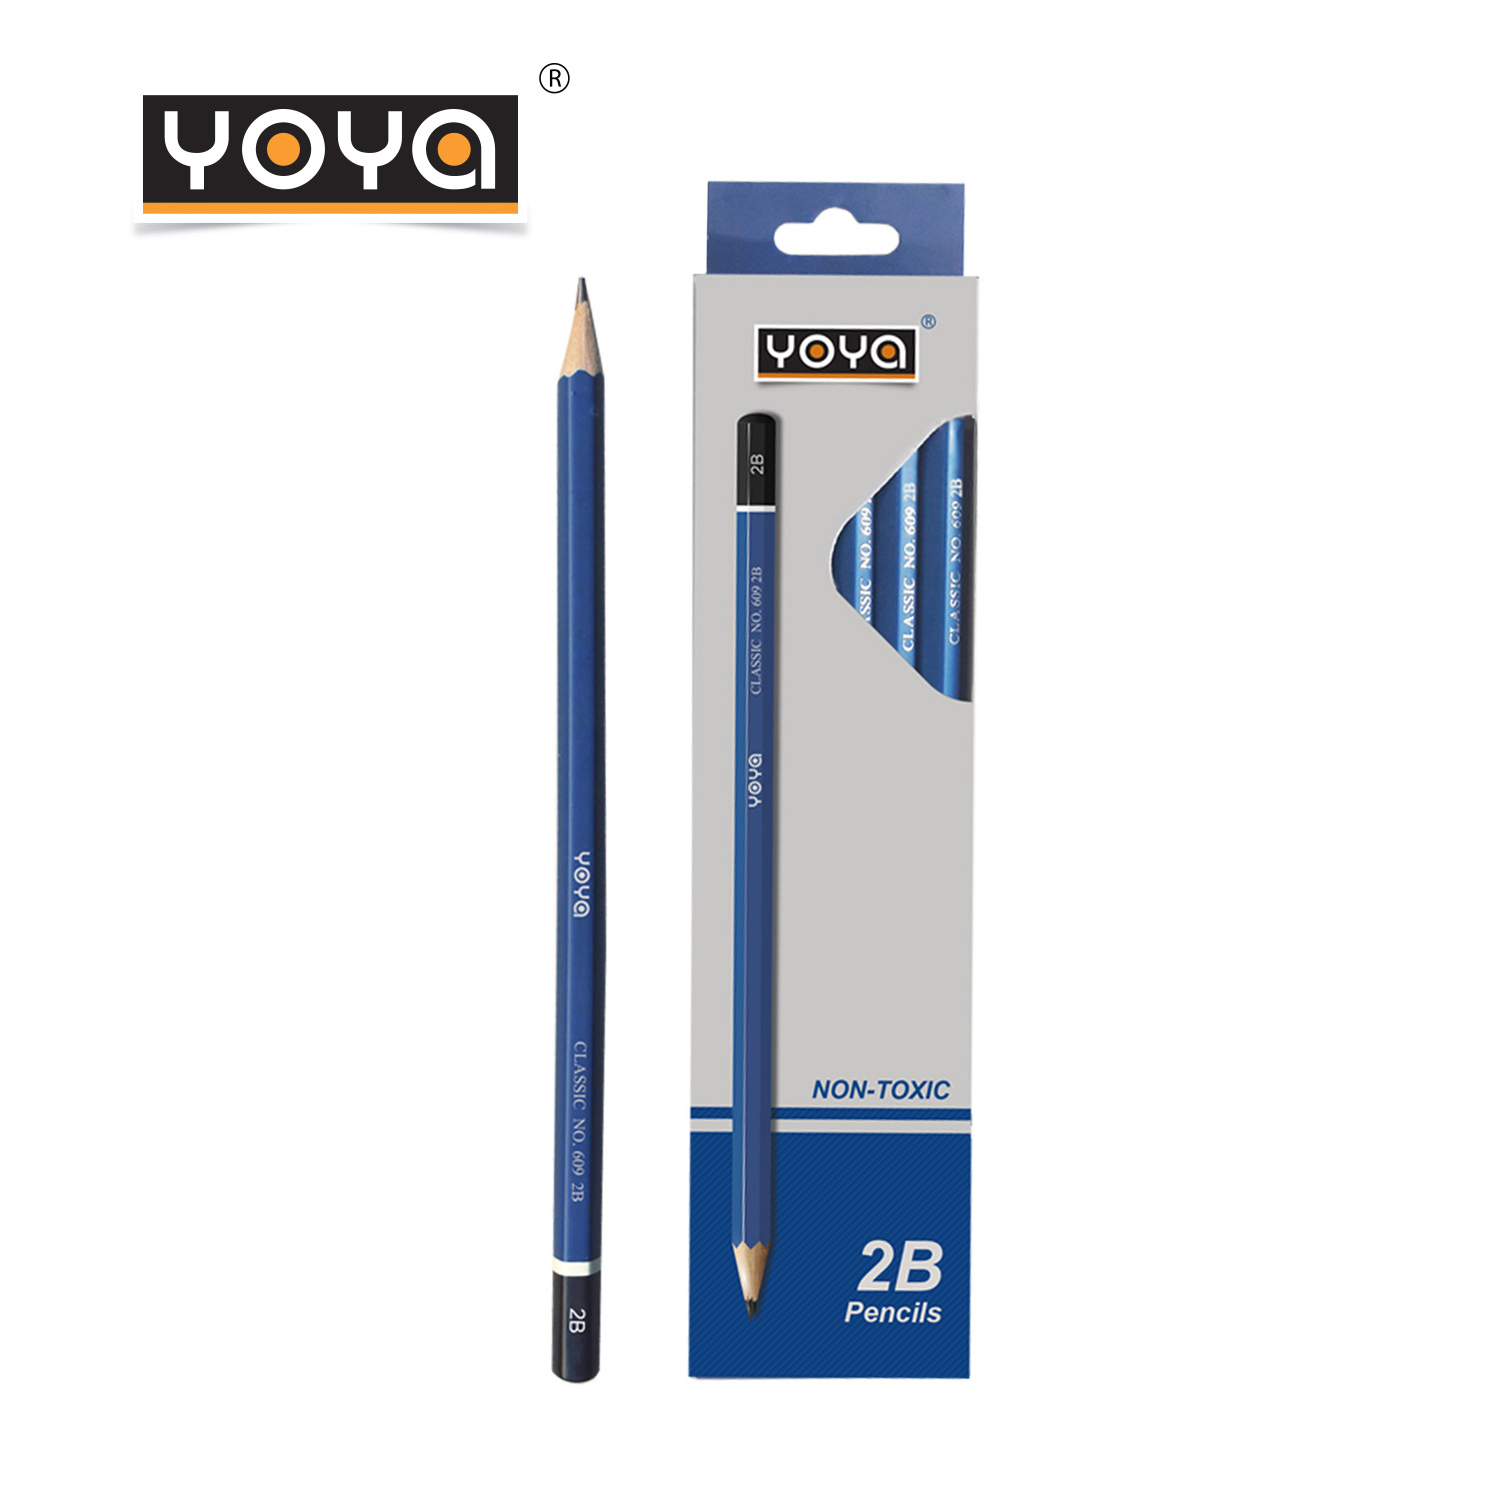 YOYA ดินสอไม้-2B แพ็ค 12 รุ่น 609-2B